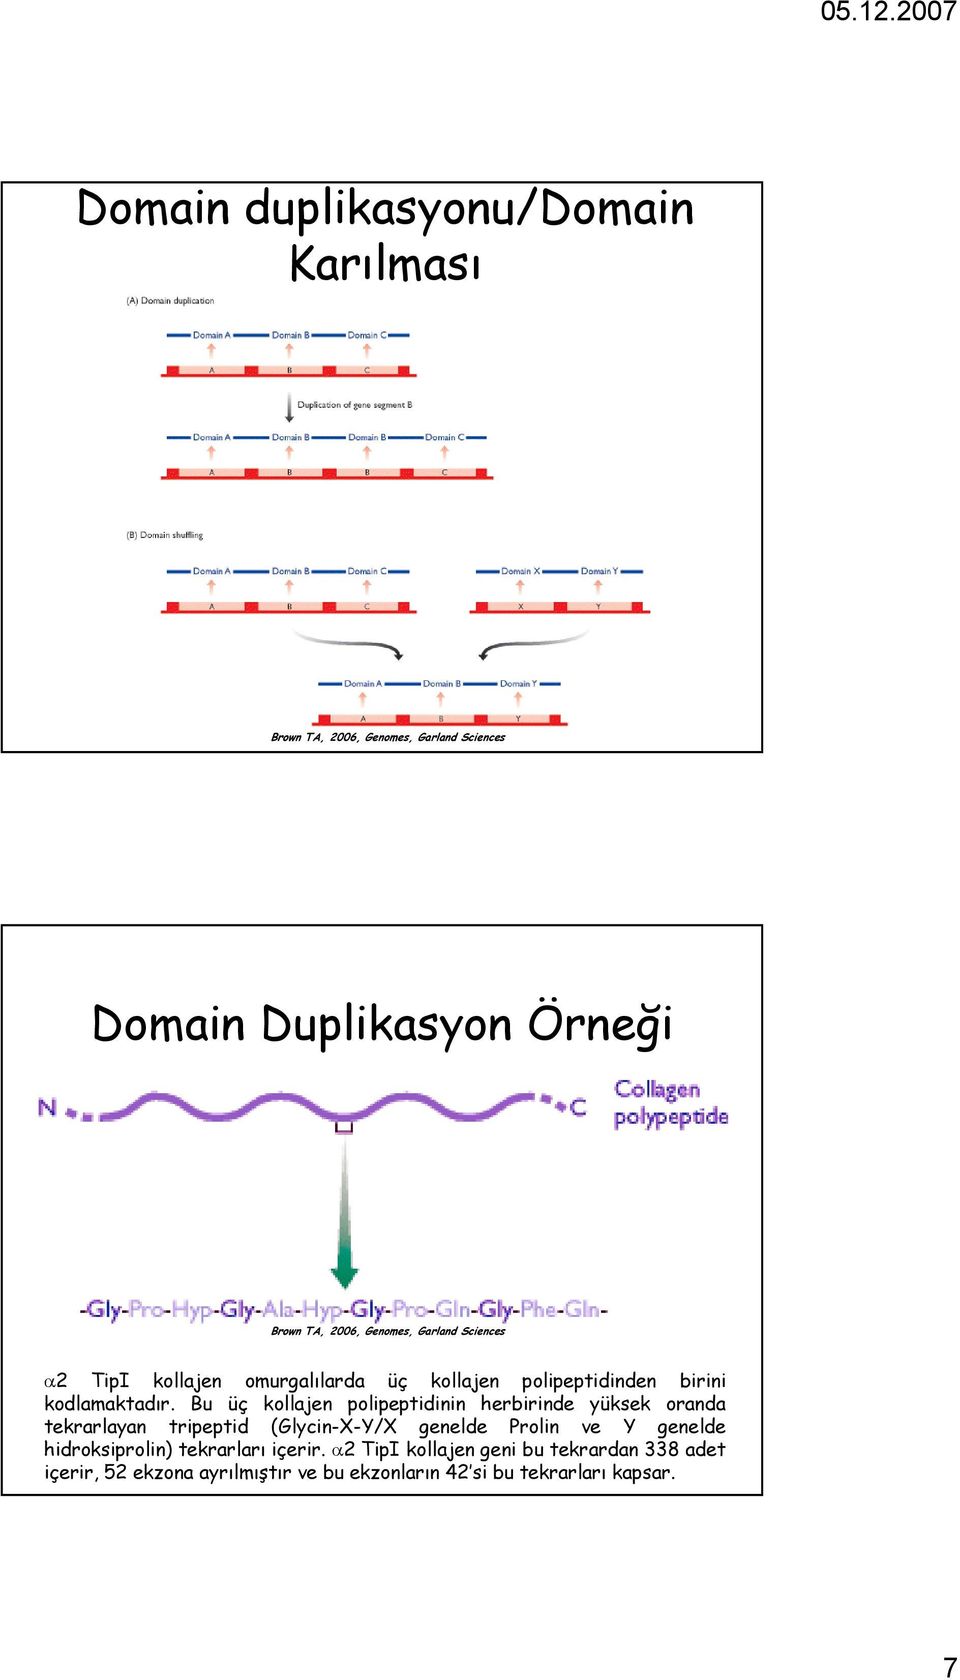 Bu üç kollajen polipeptidinin herbirinde yüksek oranda tekrarlayan tripeptid (Glycin-X-Y/X genelde